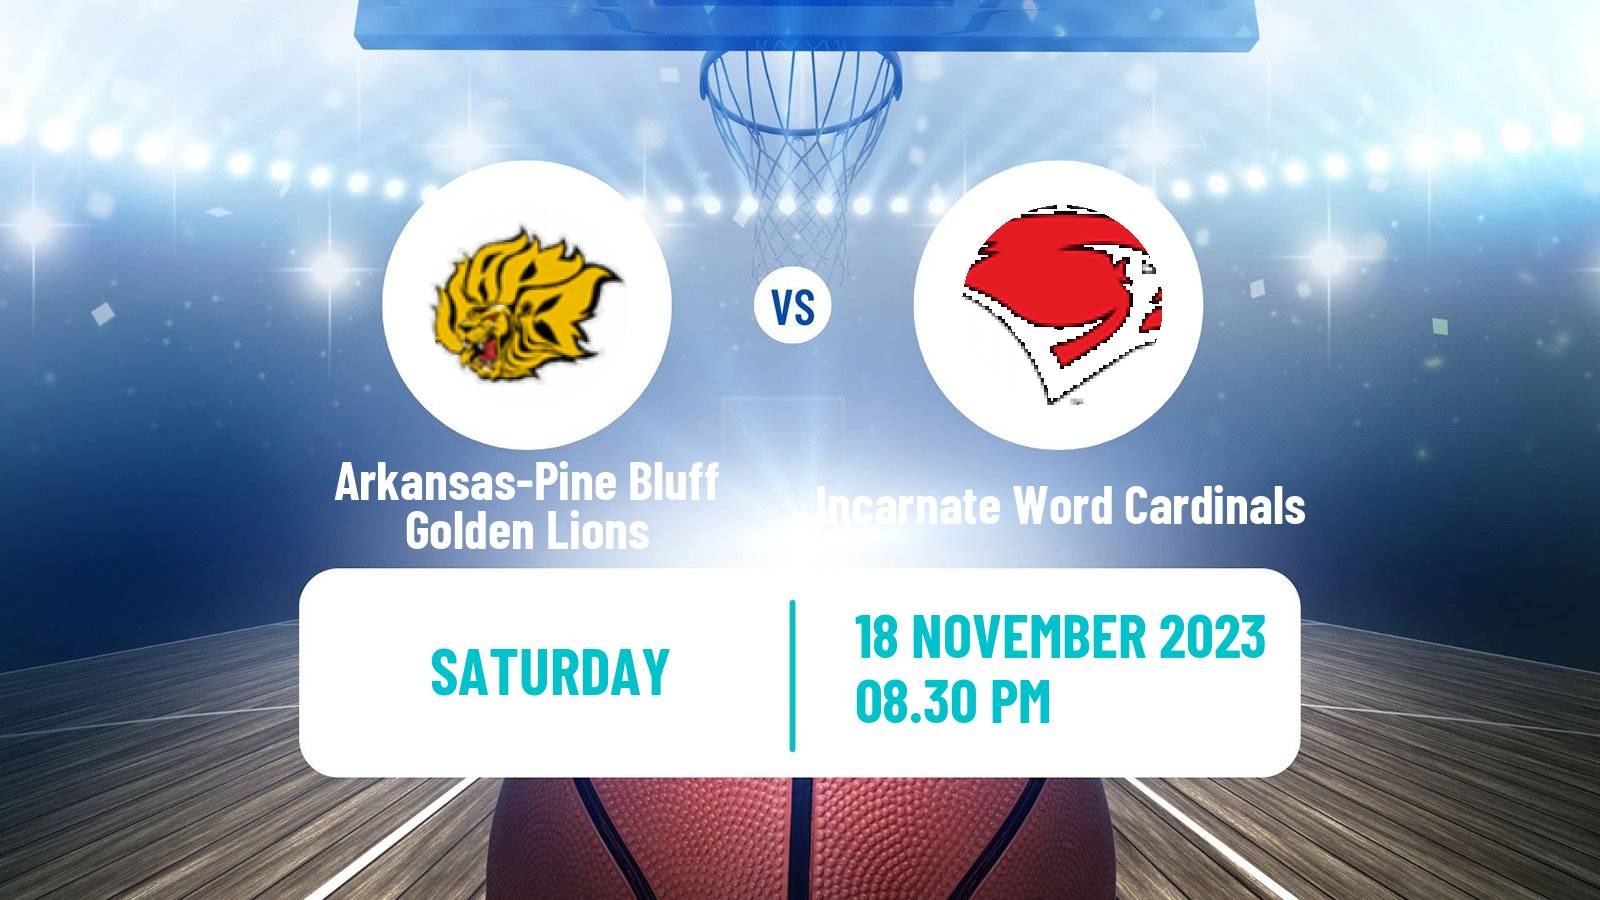 Basketball NCAA College Basketball Arkansas-Pine Bluff Golden Lions - Incarnate Word Cardinals